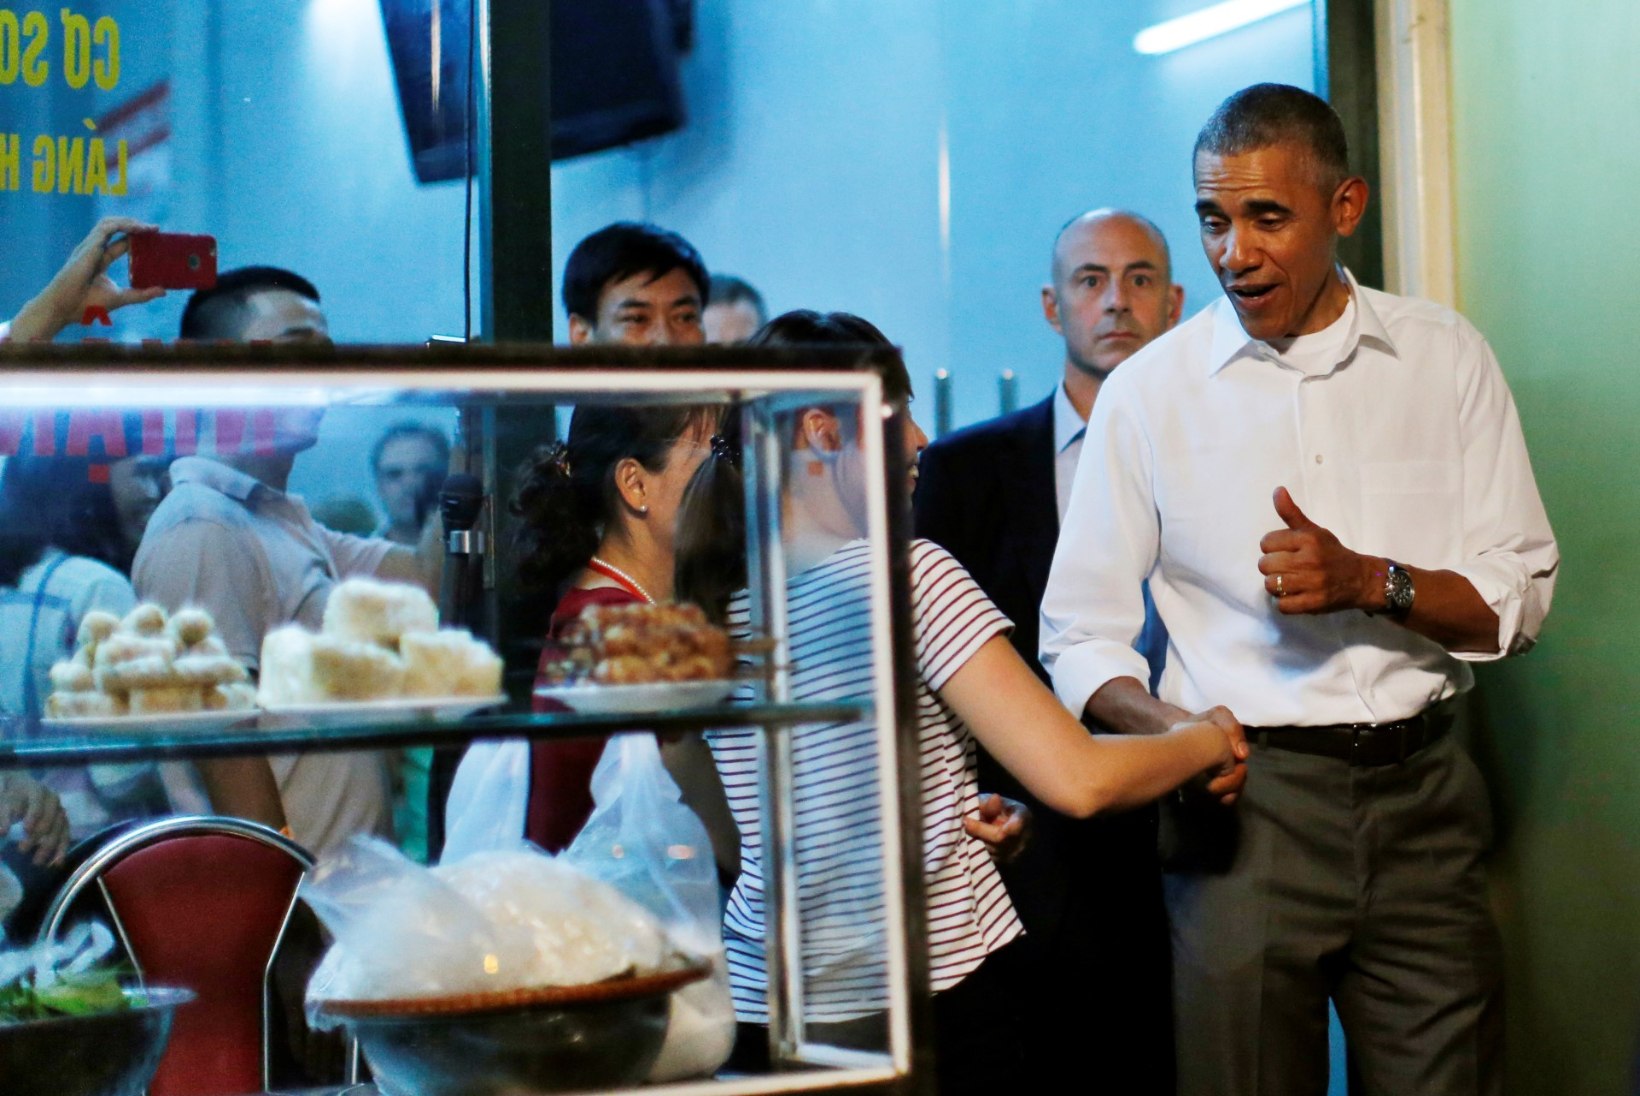 PÄEVA KASUTU FAKT | Obama valmistab 80% Jaapani söögipulkadest